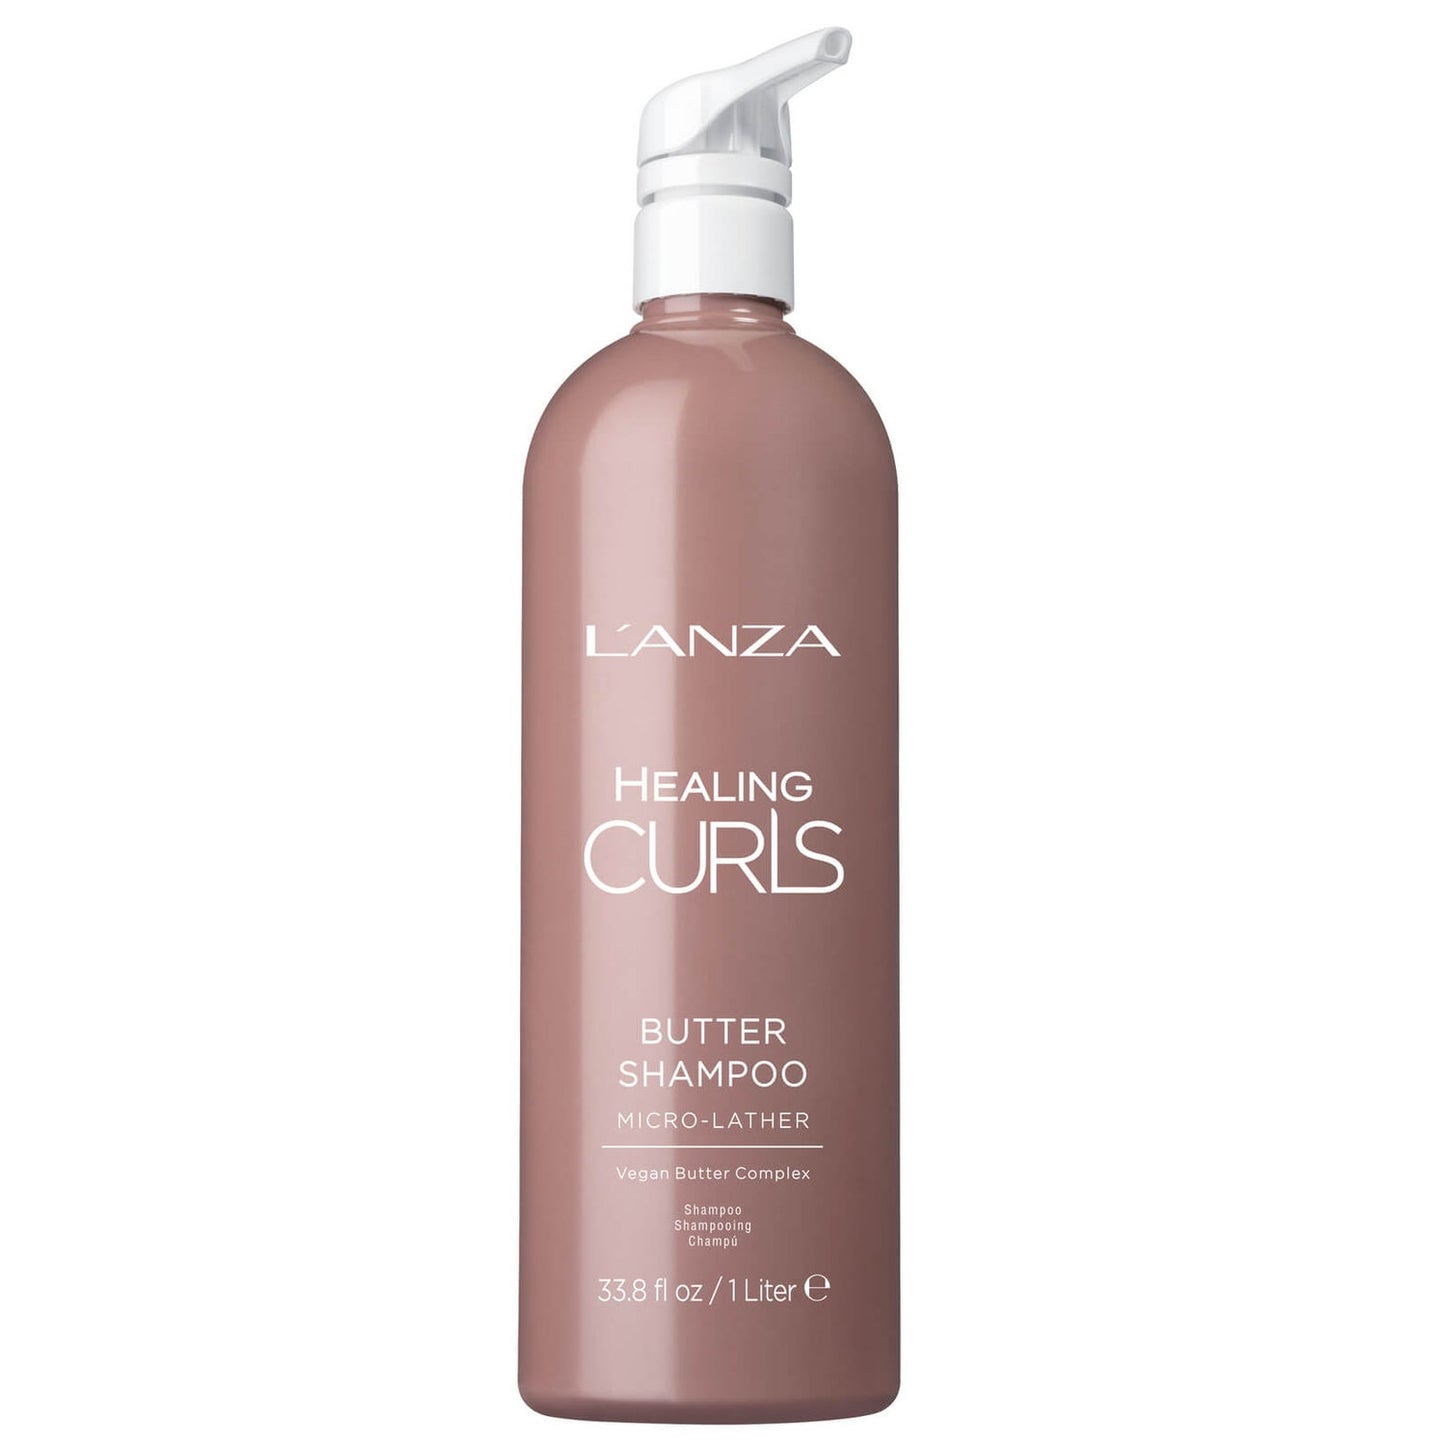 L'anza - Healing Curls Butter Shampoo 1000ml